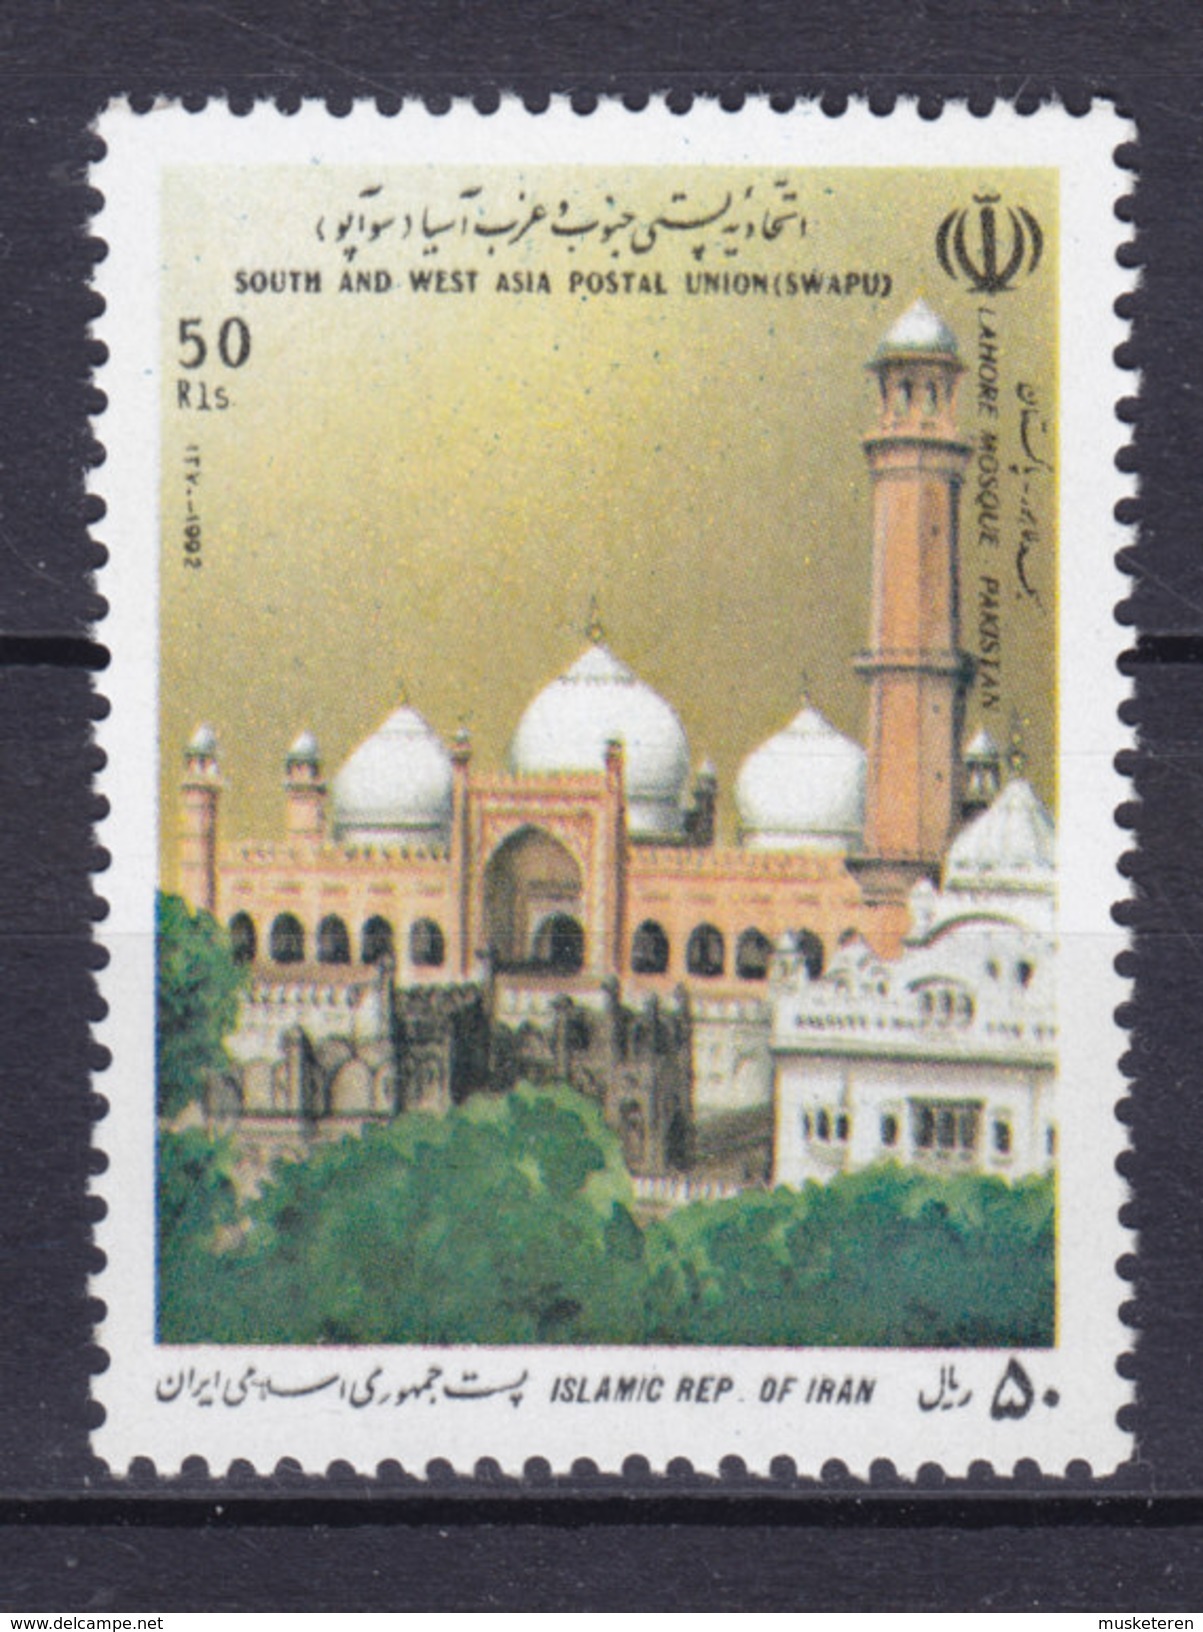 Iran 1992 Mi. 2471 SWAPU Postverein Für Süd- Und Westasien Badshahi-Moschee Lahore Pakistan Mosque MNH** - Iran